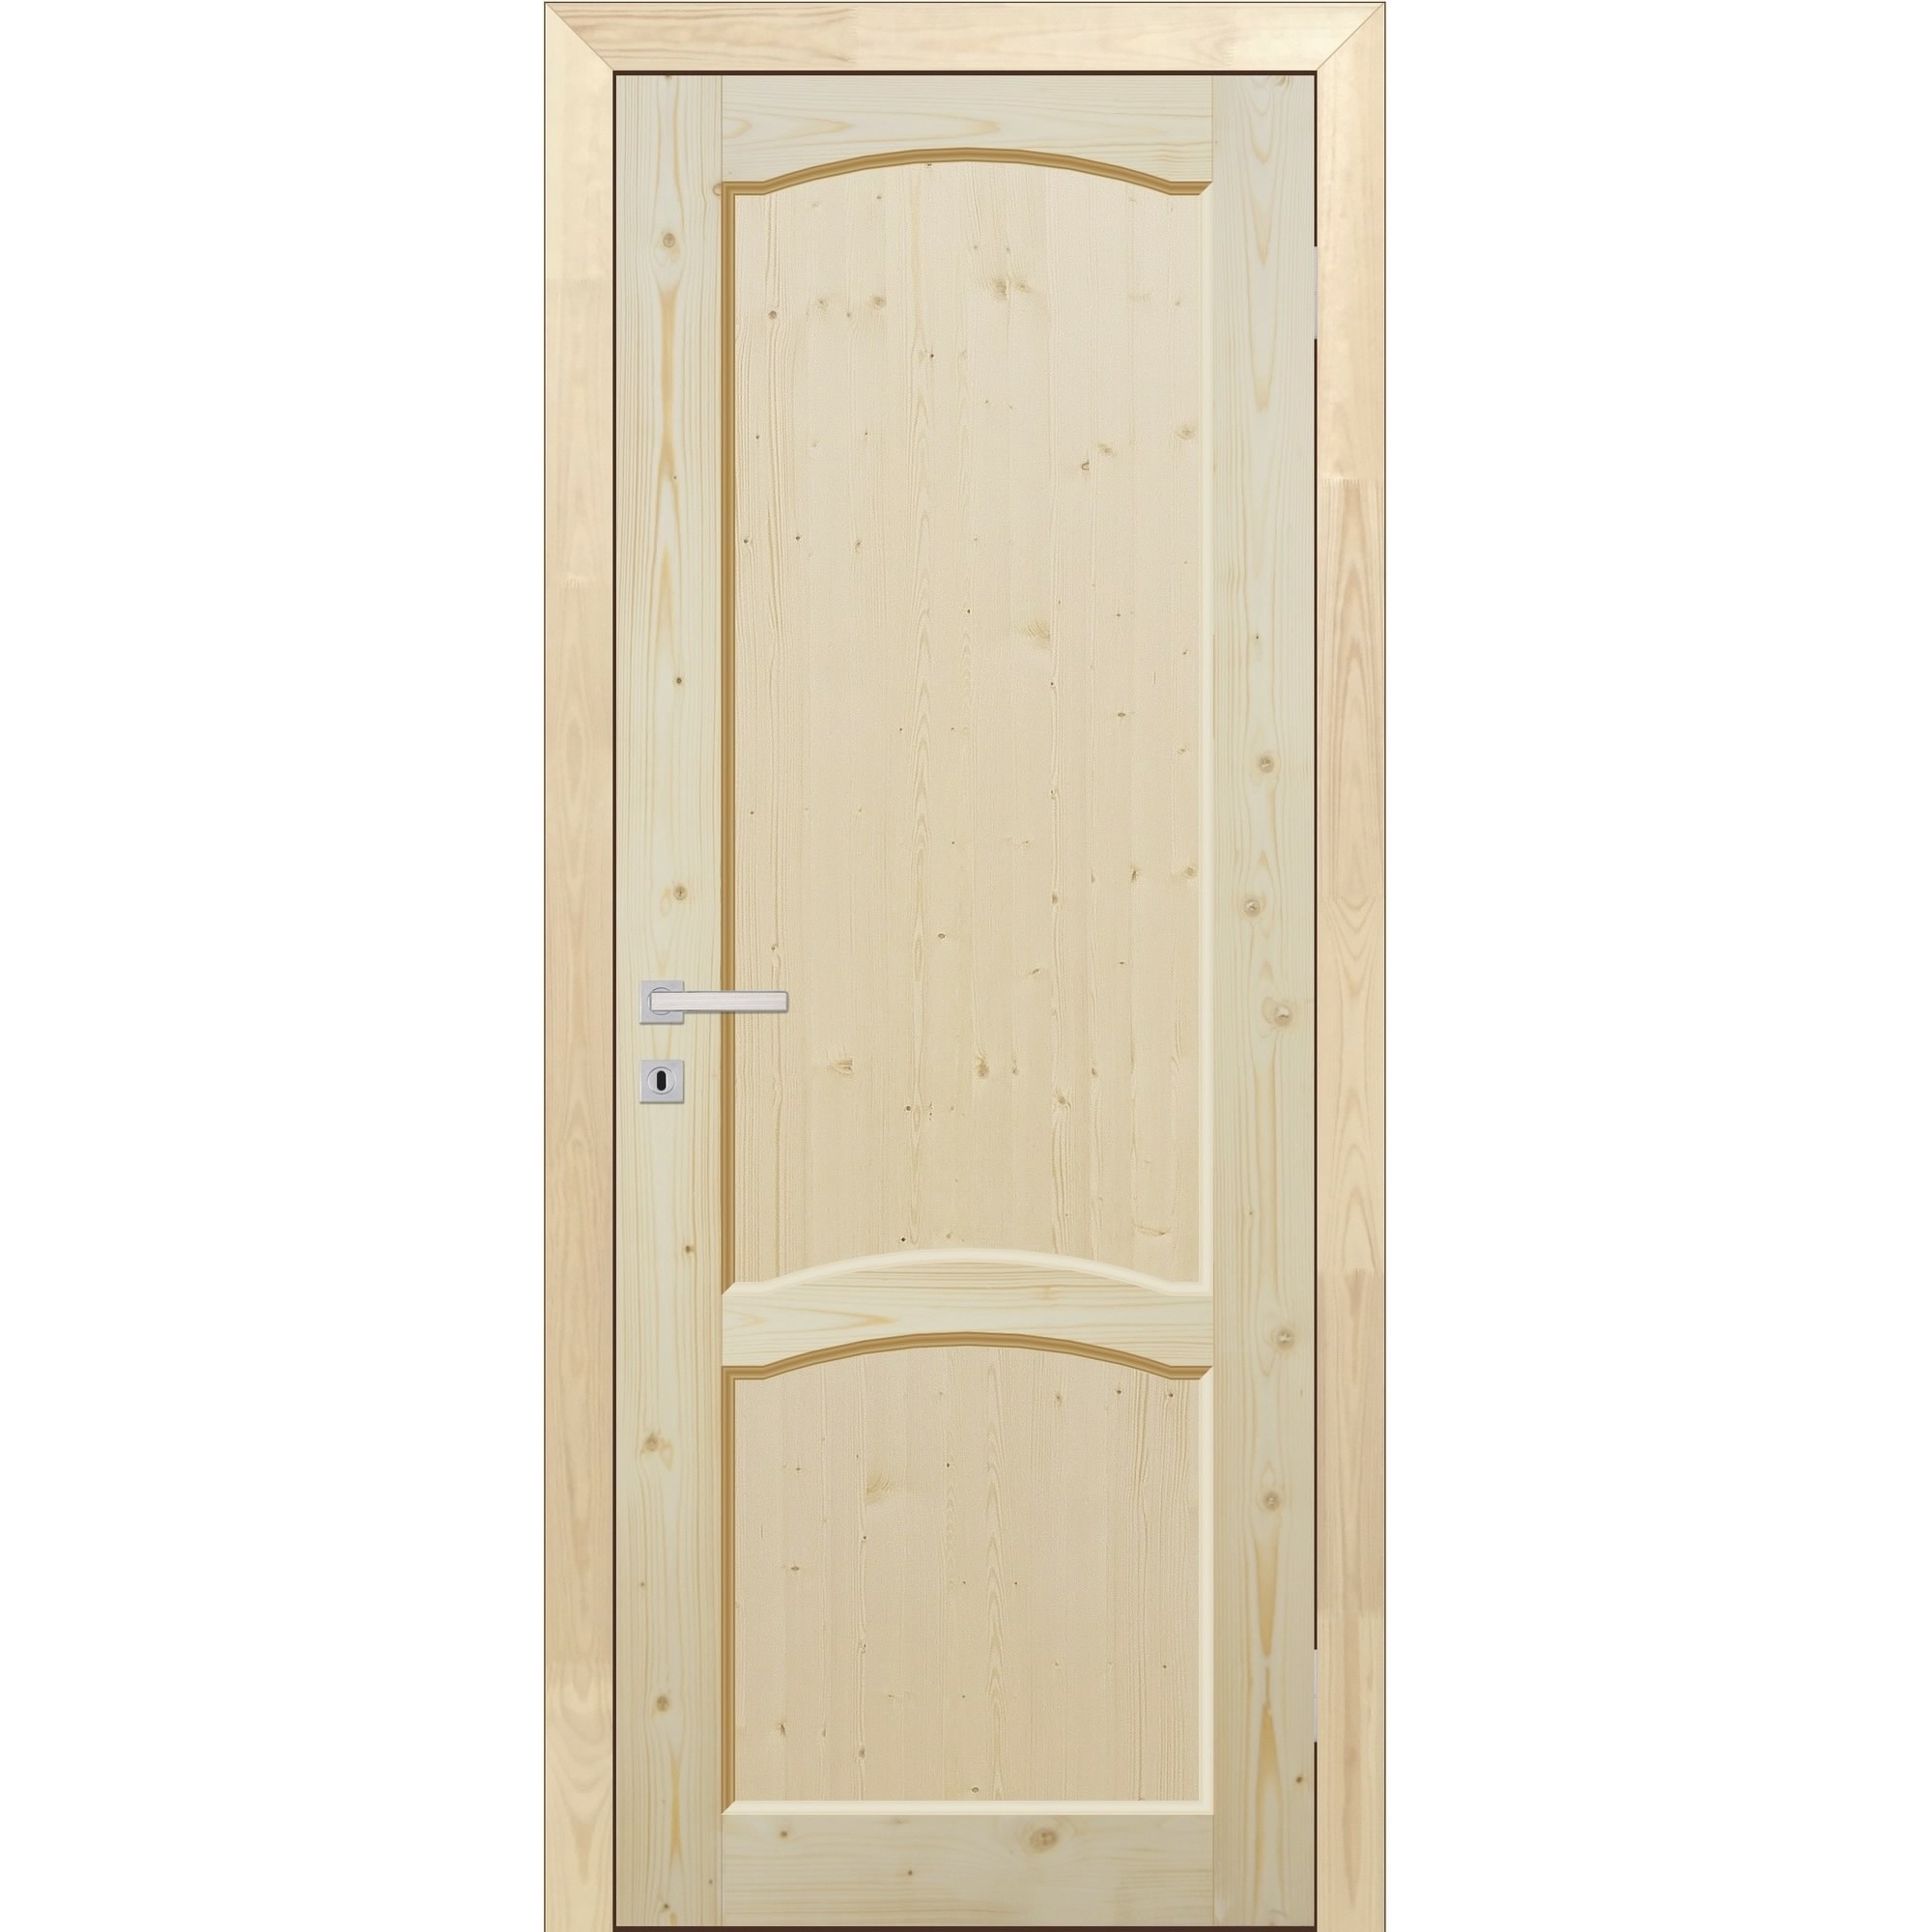 Установка двери в перегородку из гипсокартона: подробное описание работ